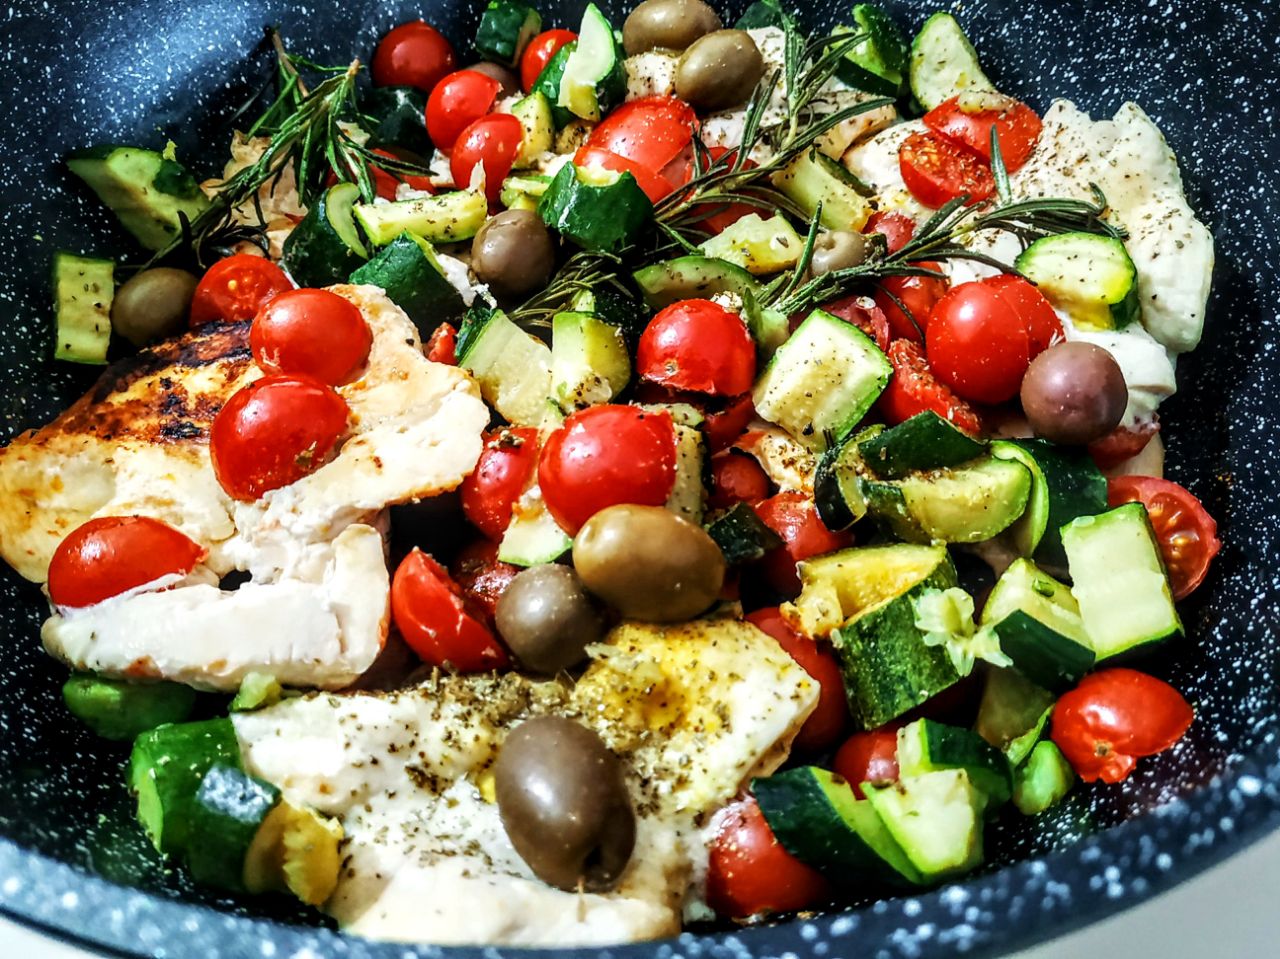 Secondi piatti a base di carne: petto di pollo ruspante in padella con pomodori olive e zucchine!